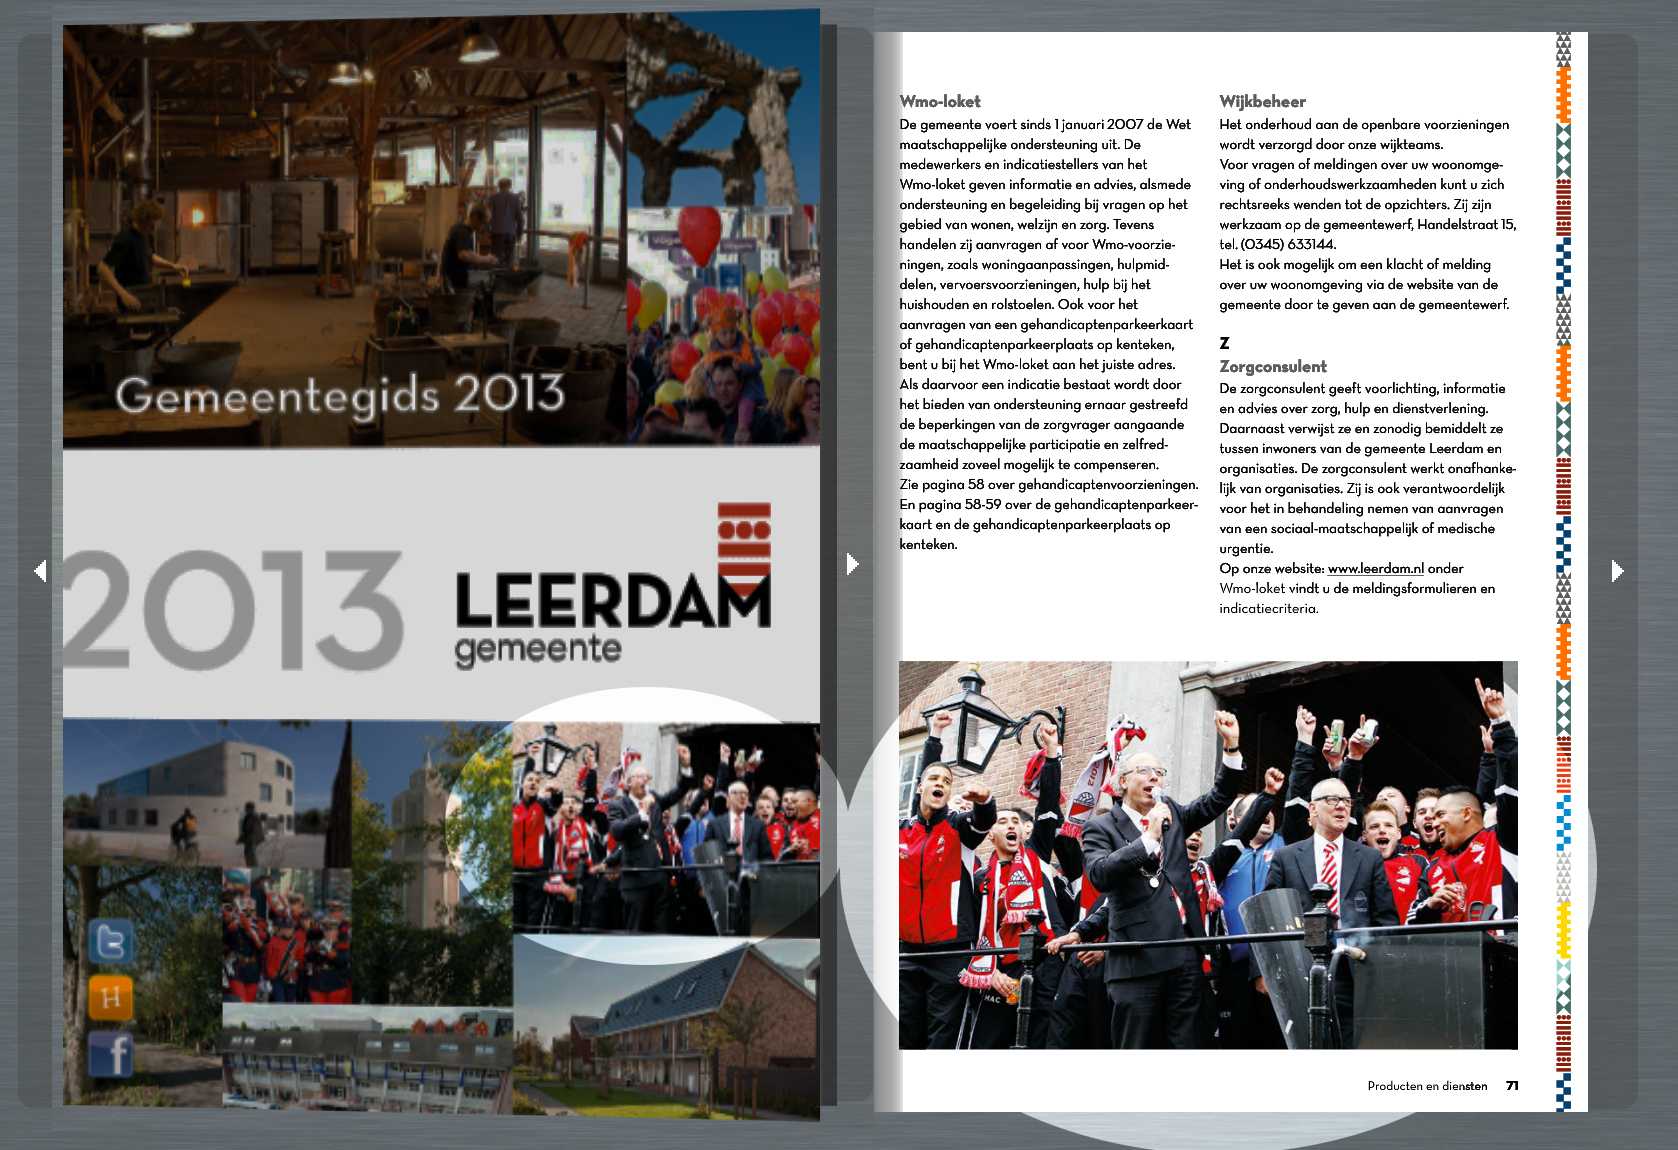 DBRN Fotografie gemeentegids 2013 Leerdam